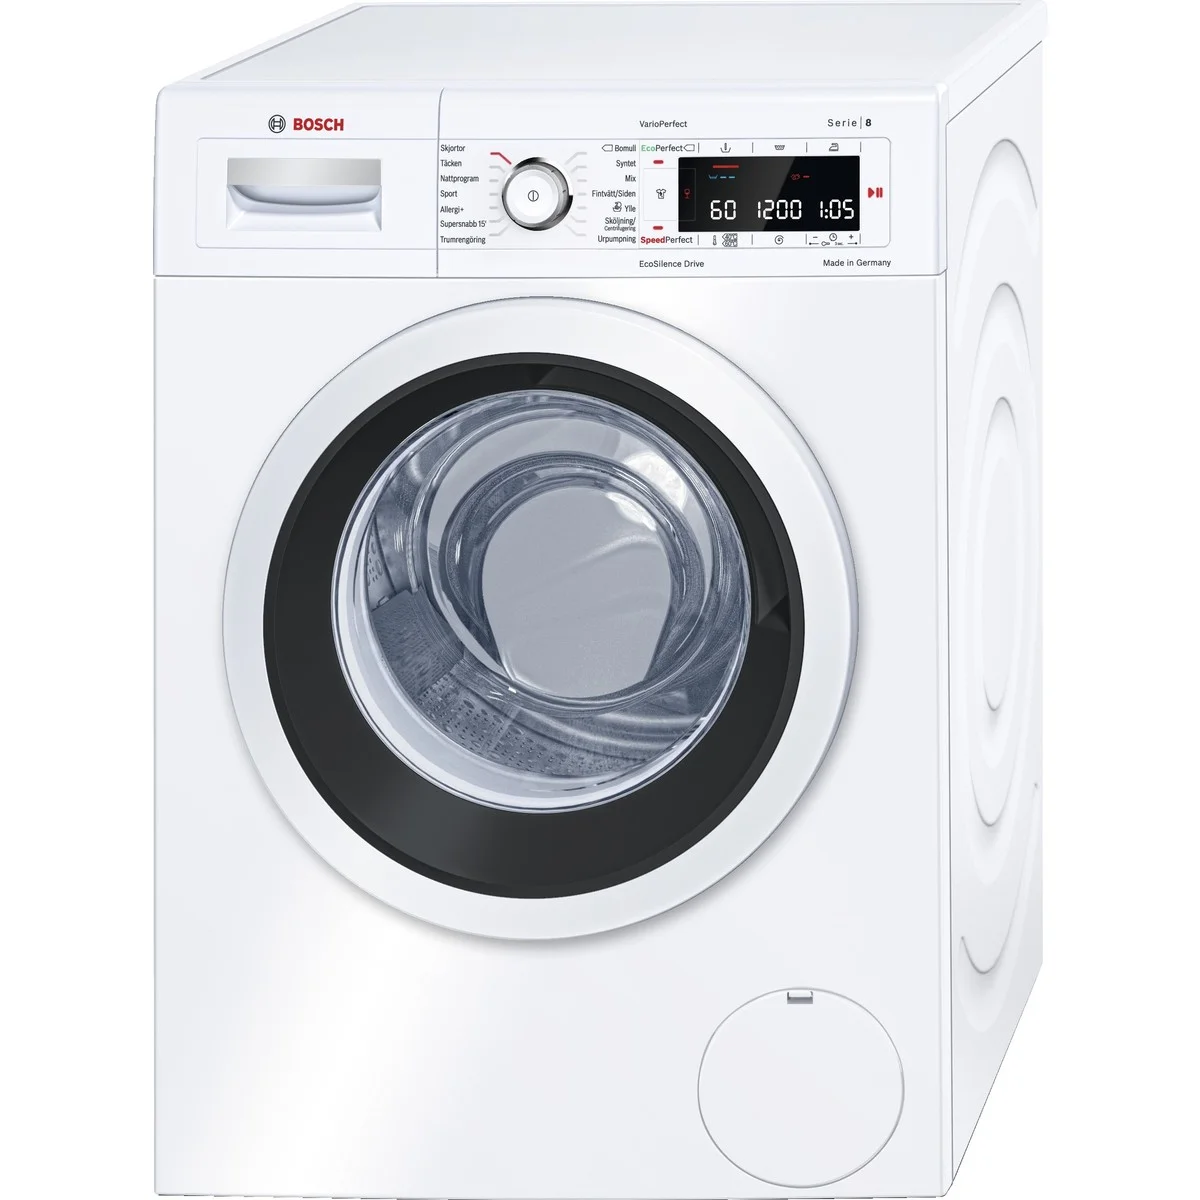 hane Rummet discolor Test af vaskemaskiner → Find den bedste vaskemaskine